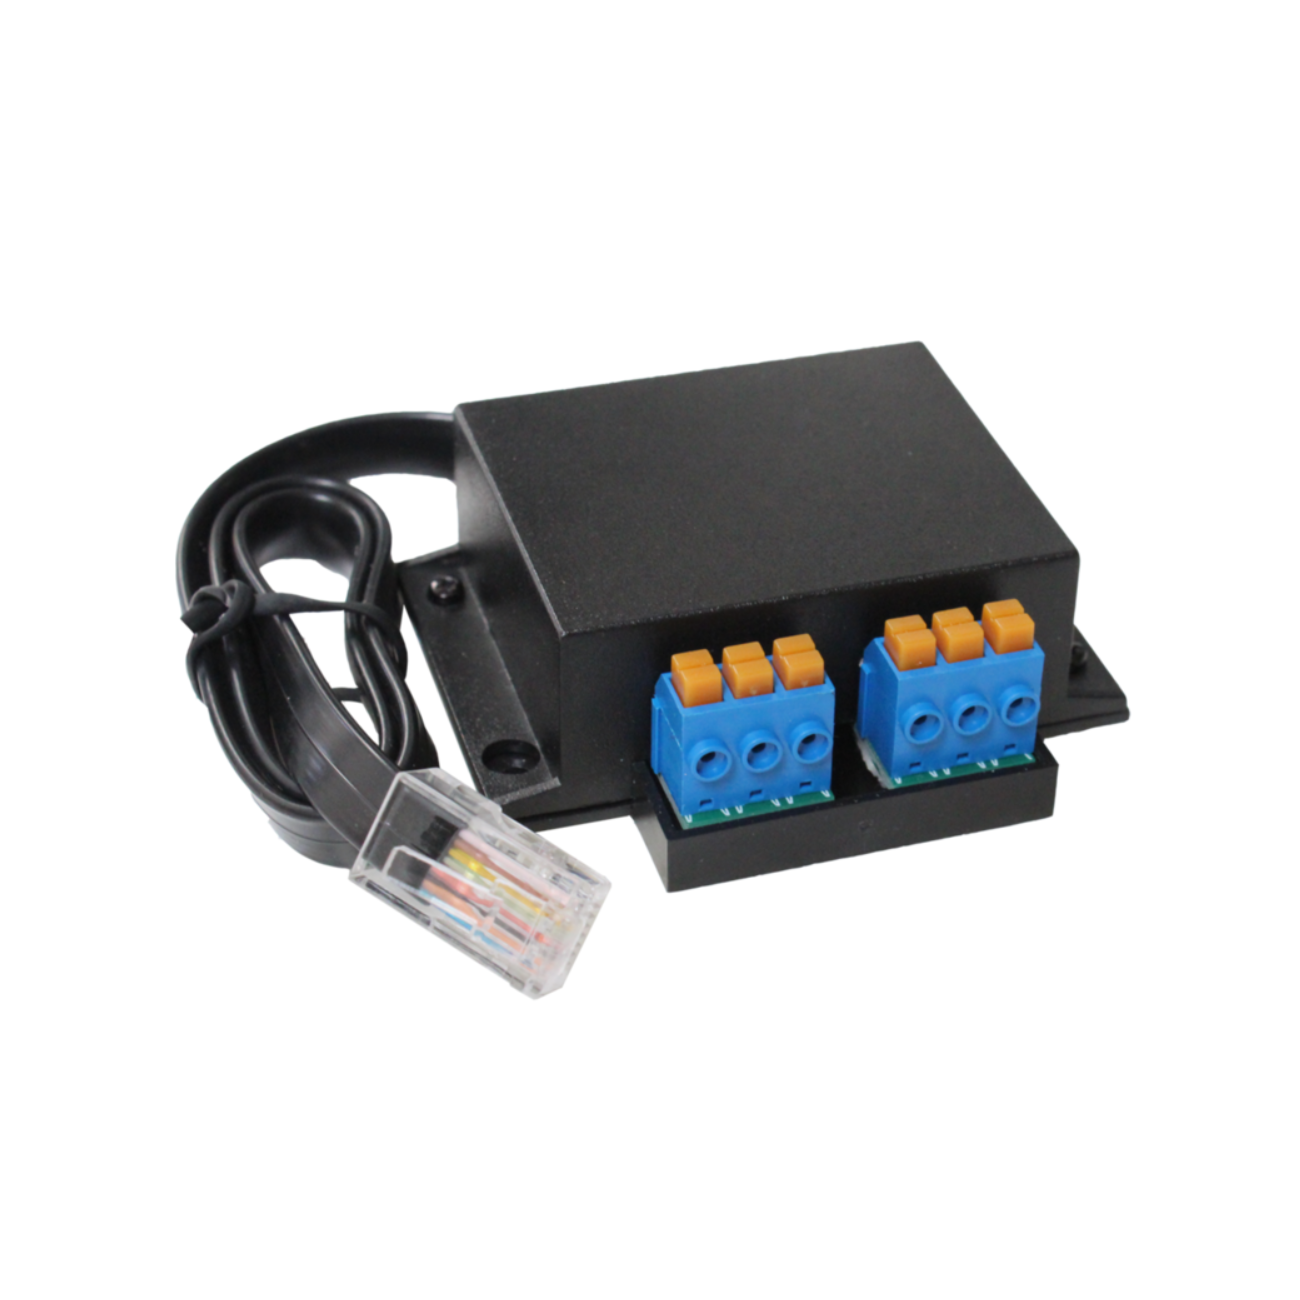 PPR-2 Control Box PurePower Serie